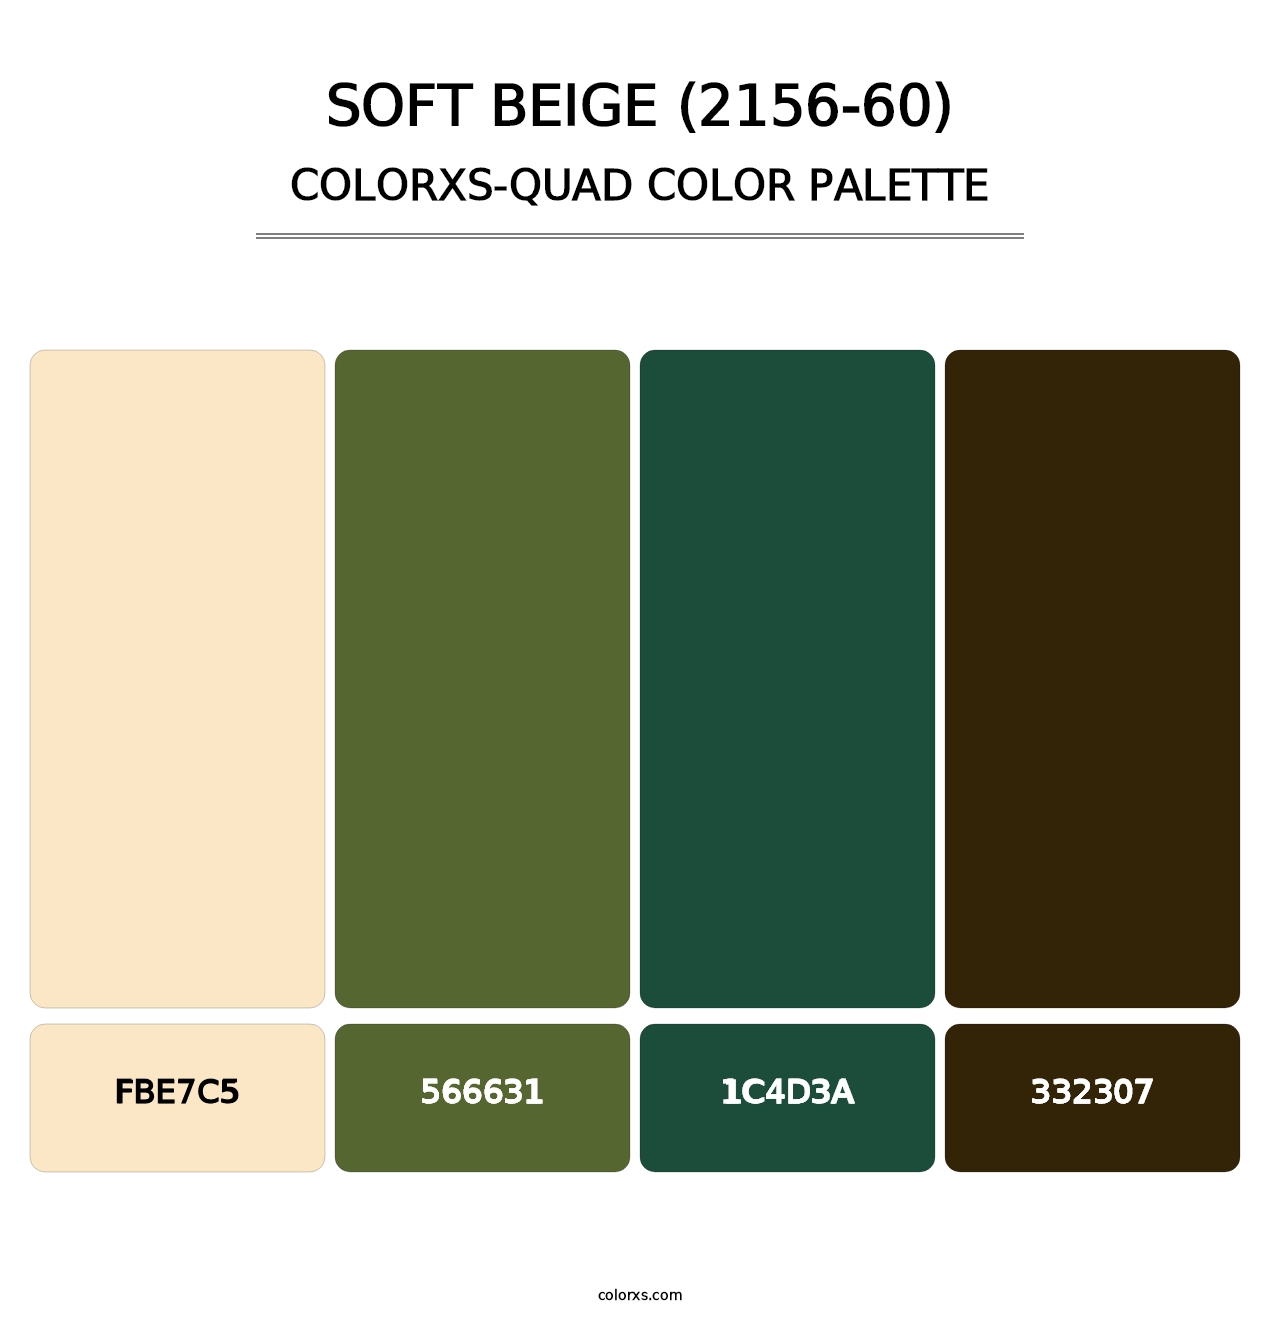 Soft Beige (2156-60) - Colorxs Quad Palette